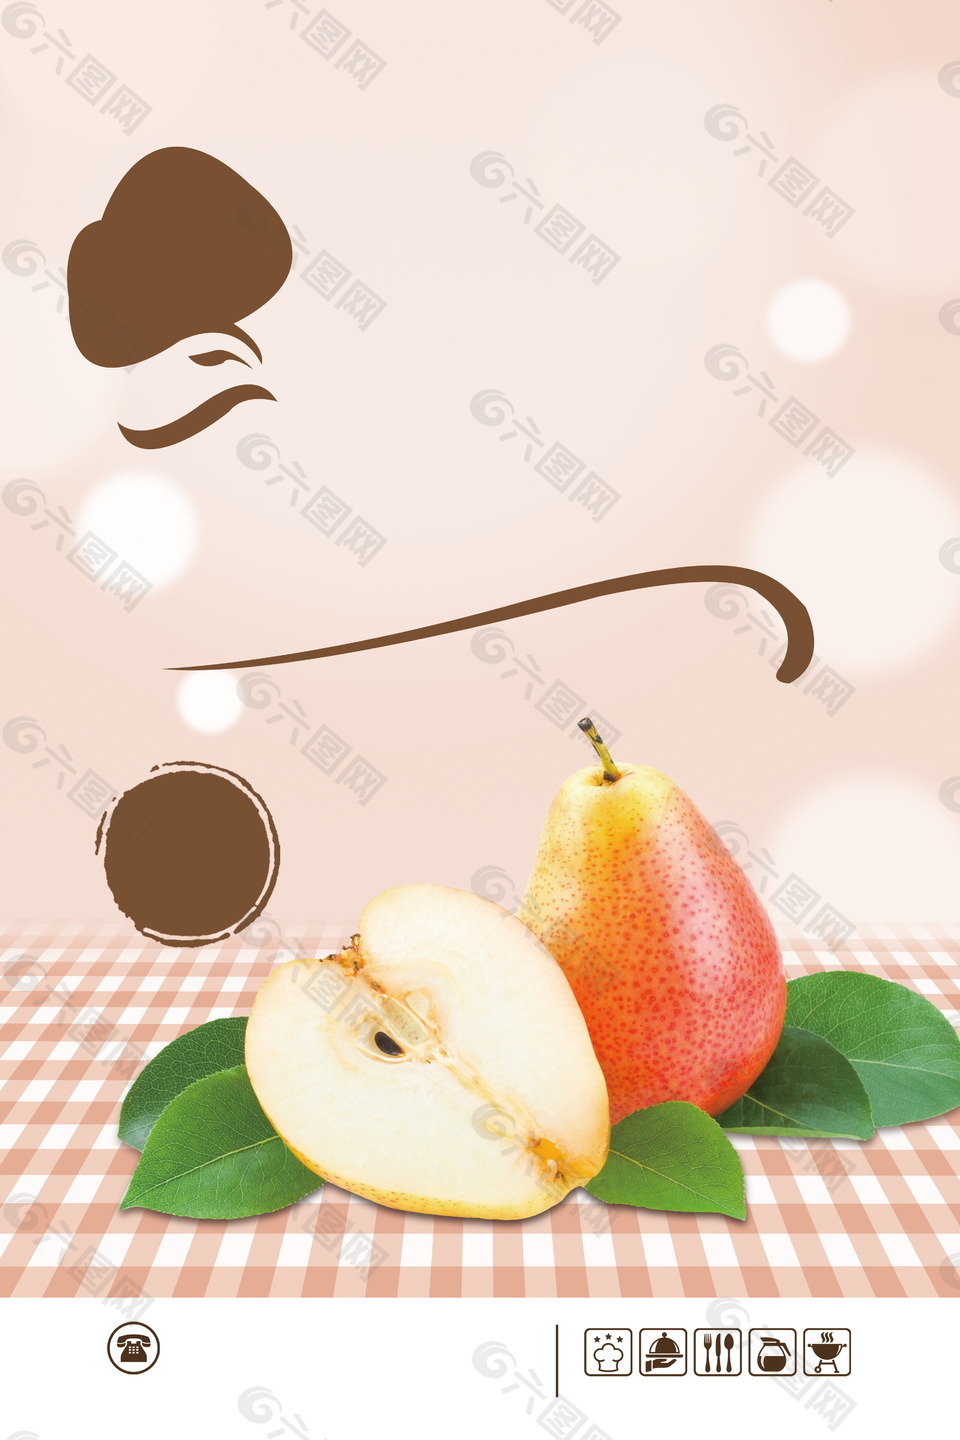 新鲜香甜水果梨子广告背景